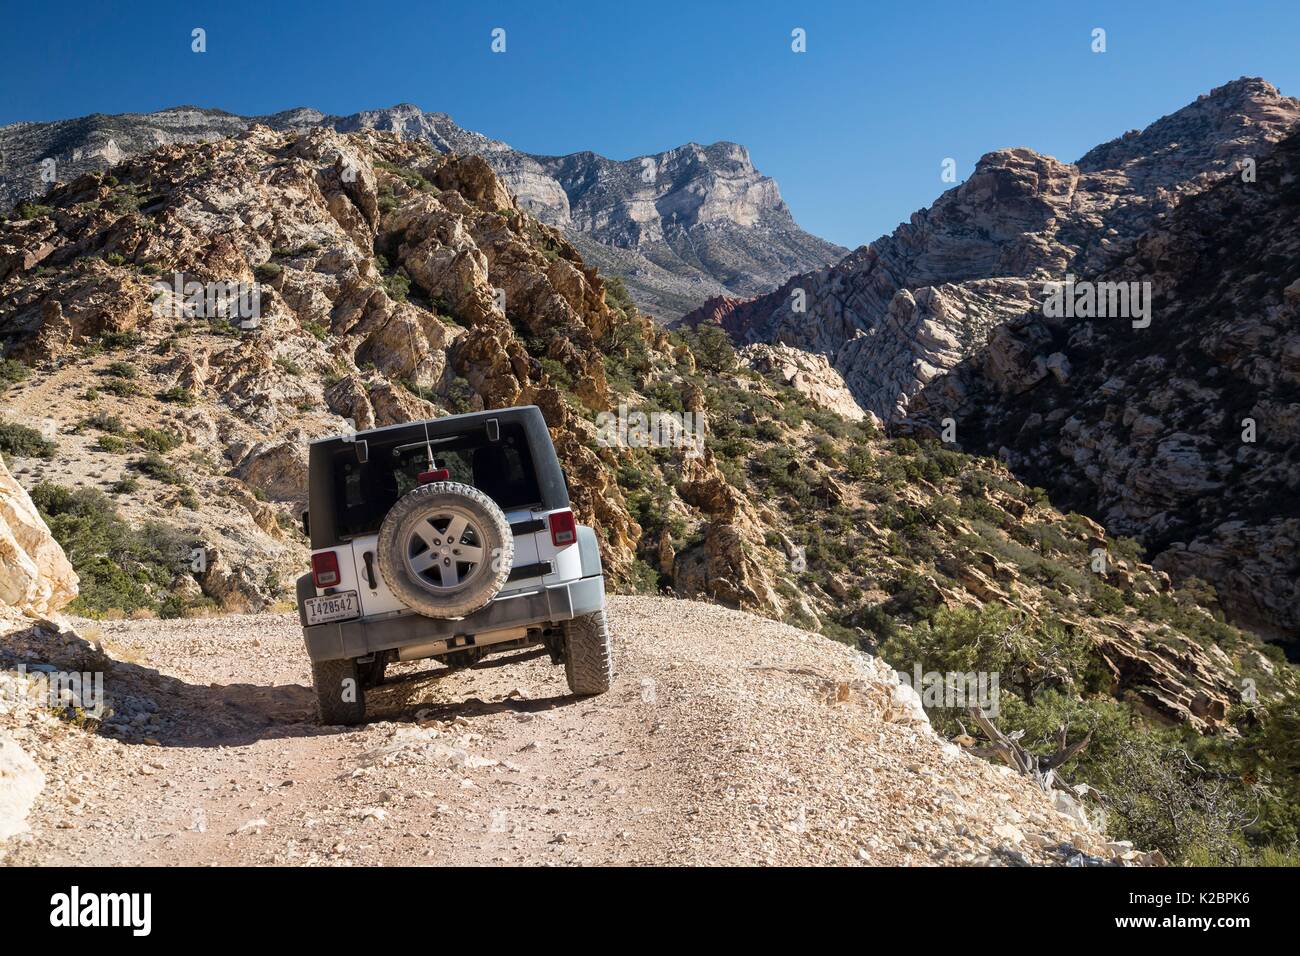 Touristen fahren Sie ihr Auto auf einem unbefestigten Weg, um eine bessere Sicht auf die Schluchten, Grate und Gipfel, die die La Madre Mountain Wilderness innerhalb der Red Rock Canyon National Conservation Area September 27, 2016 in der Nähe von Las Vegas, Nevada. Stockfoto